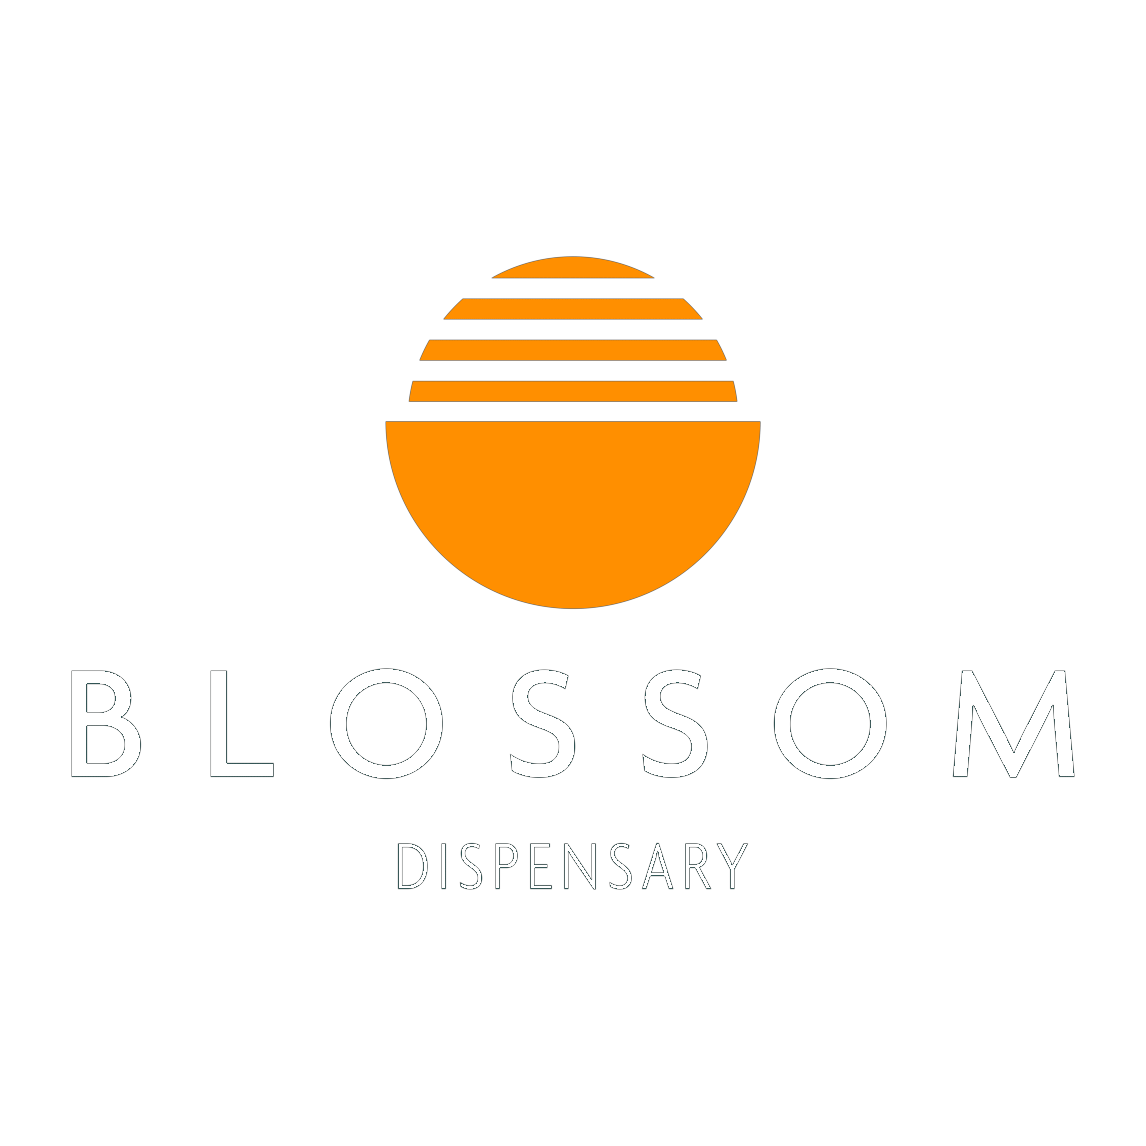 Blossom Dispensary (Temporarily Closed) logo